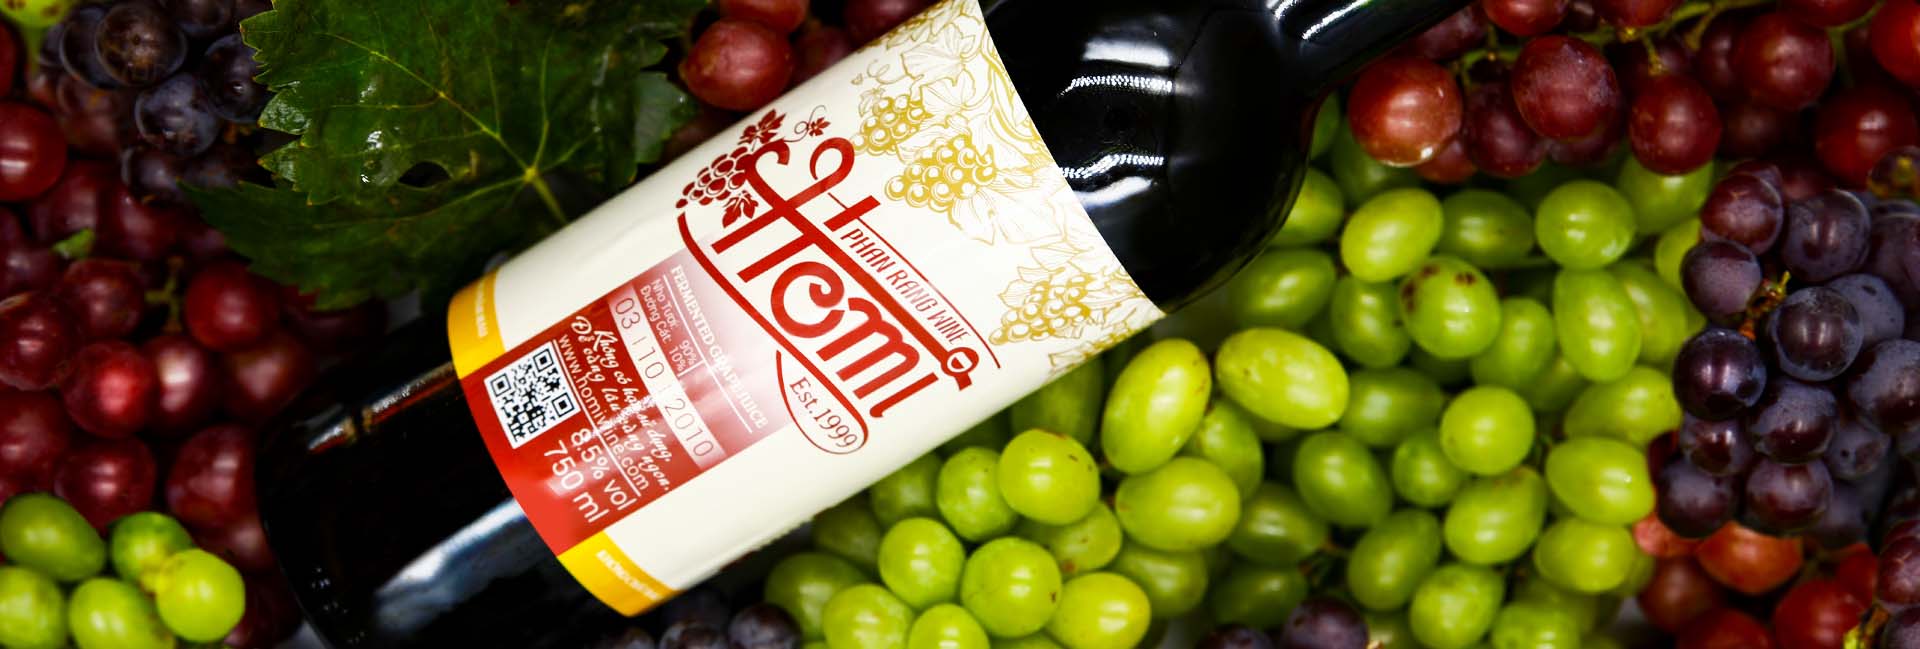 Homi Wine Tự hào là thương hiệu uy tín